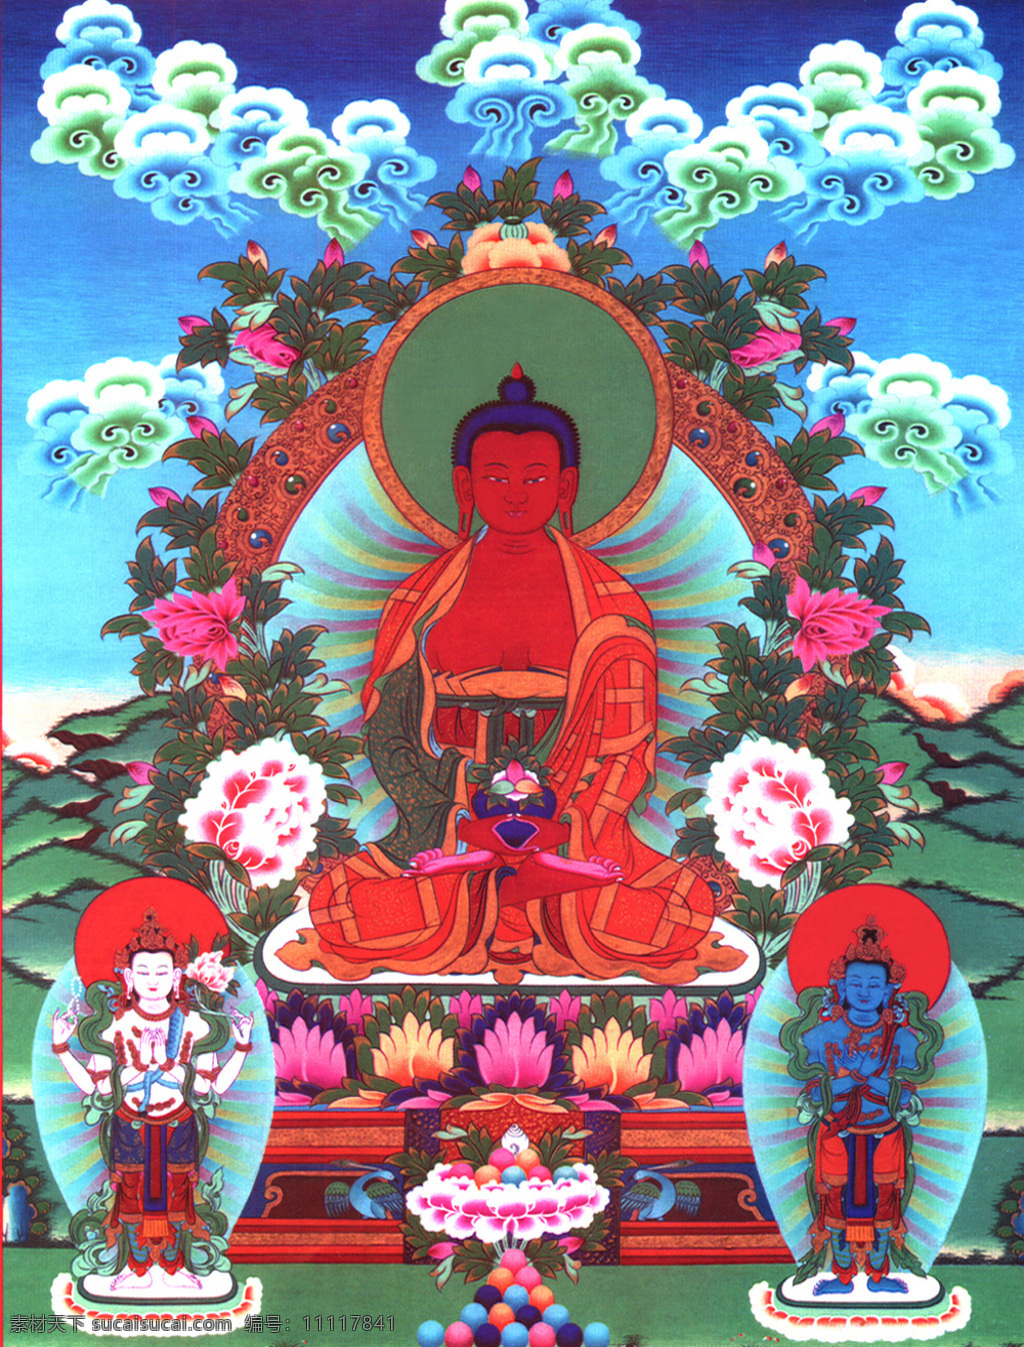 西方三圣 阿弥陀佛 无量寿佛 西方极乐世界 三圣图 唐卡 藏传佛教 宗教信仰 文化艺术